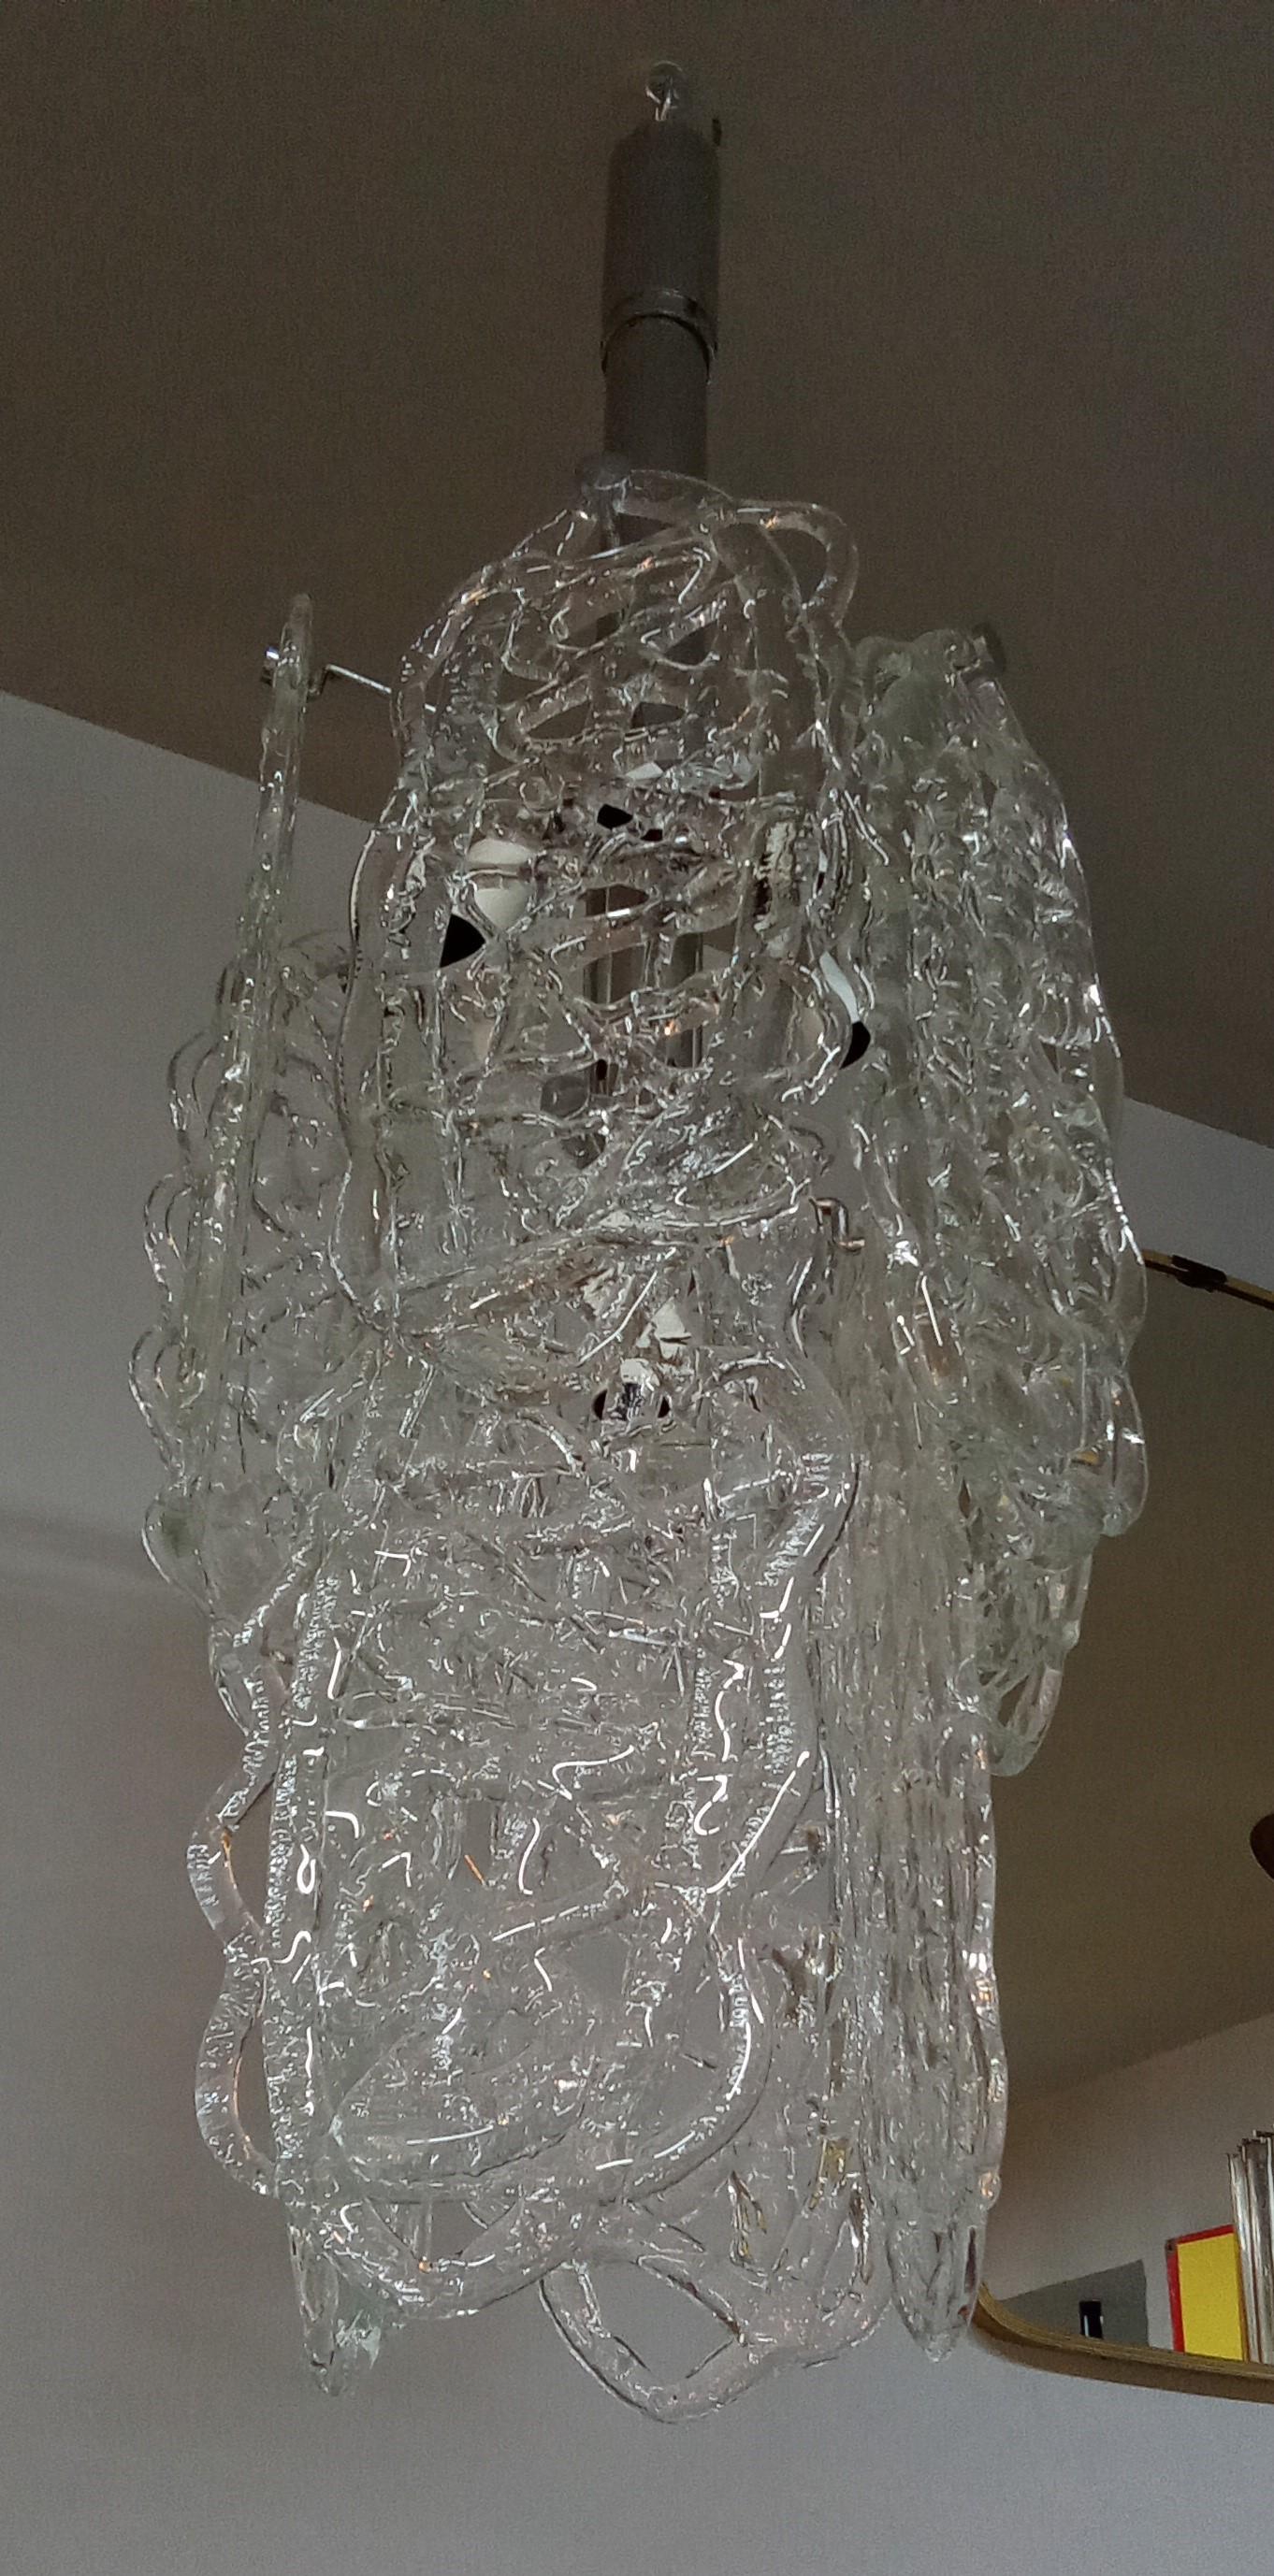 Bellissimo lampadario modello Ragnatela in vetro di Murano traforato. Anni '60 circa. Disegno di Vistosi per Mazzega.
Structure en métal, bonnes conditions.